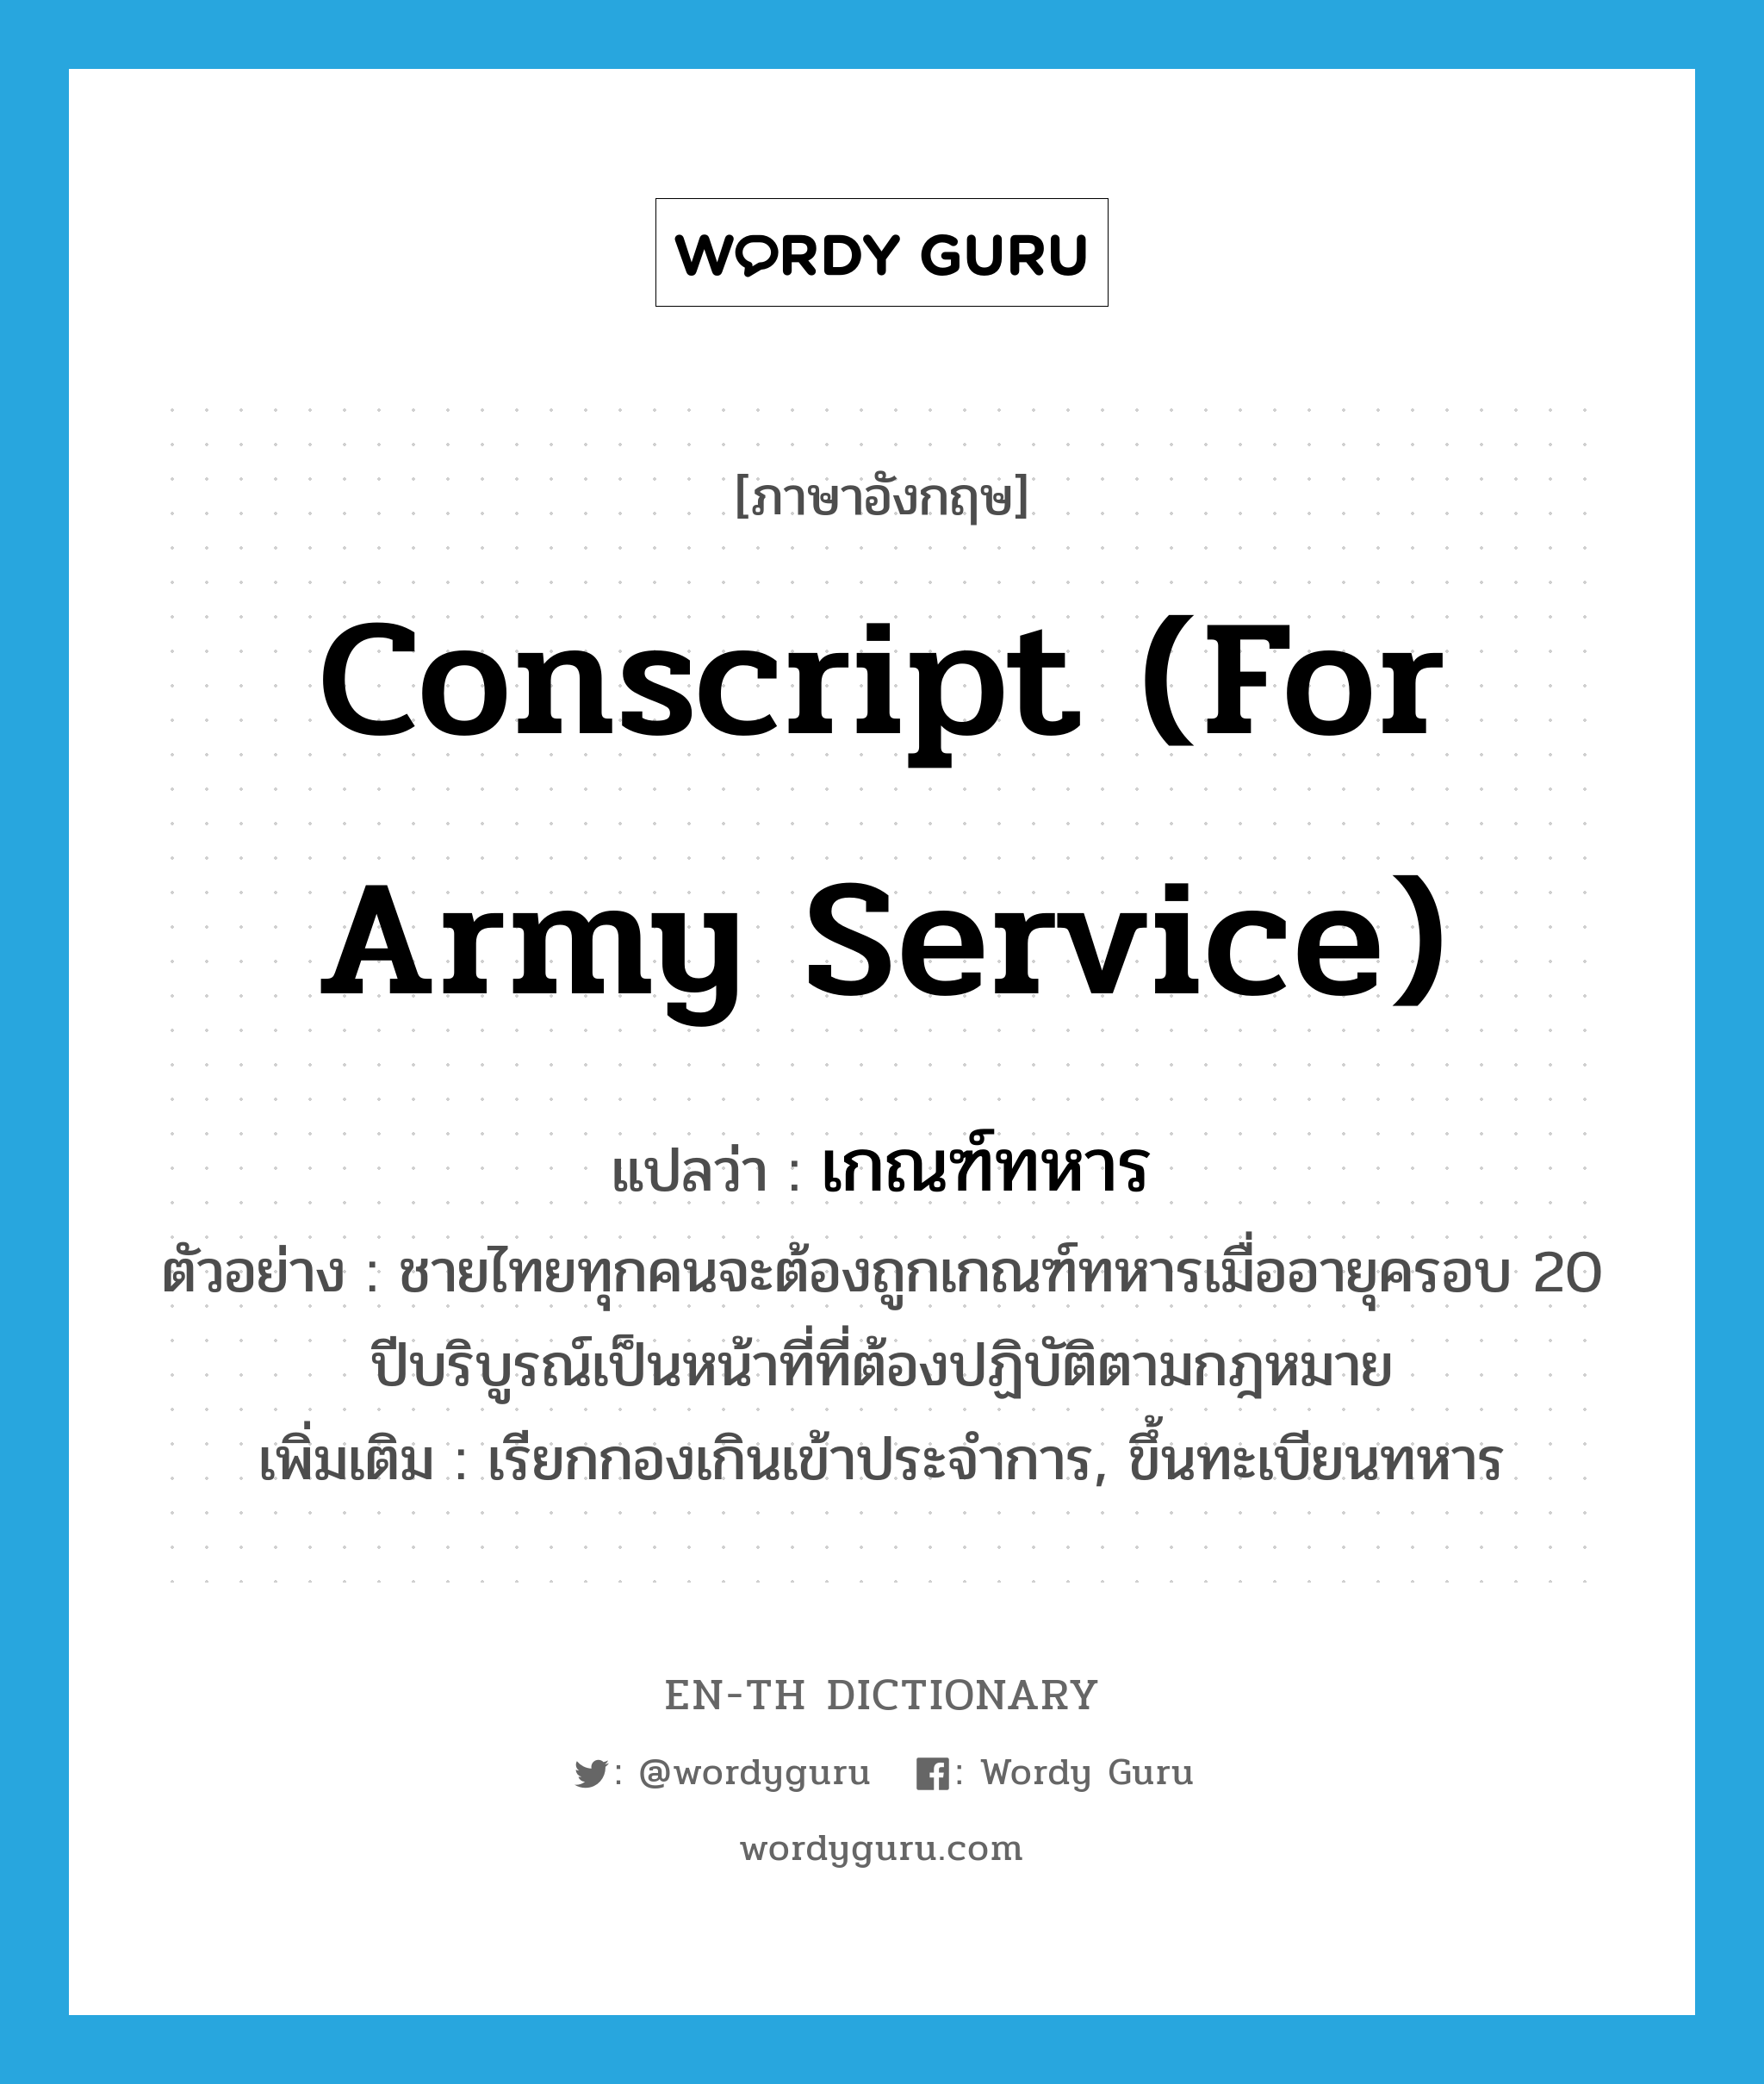 เกณฑ์ทหาร ภาษาอังกฤษ?, คำศัพท์ภาษาอังกฤษ เกณฑ์ทหาร แปลว่า conscript (for army service) ประเภท V ตัวอย่าง ชายไทยทุกคนจะต้องถูกเกณฑ์ทหารเมื่ออายุครอบ 20 ปีบริบูรณ์เป็นหน้าที่ที่ต้องปฏิบัติตามกฎหมาย เพิ่มเติม เรียกกองเกินเข้าประจำการ, ขึ้นทะเบียนทหาร หมวด V